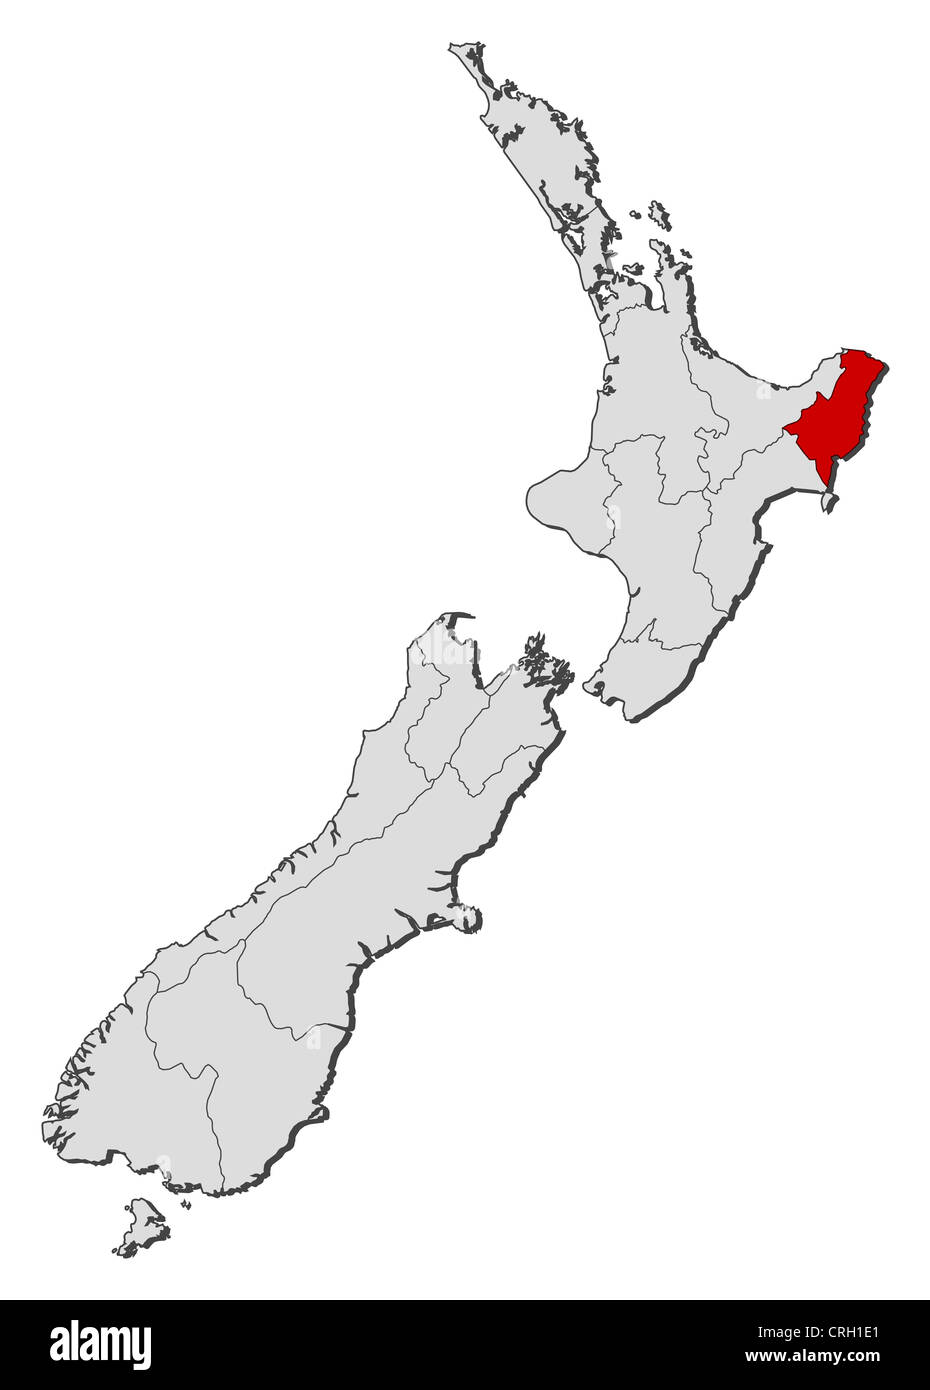 Mappa Politico della Nuova Zelanda con le diverse regioni dove Gisborne è evidenziata. Foto Stock